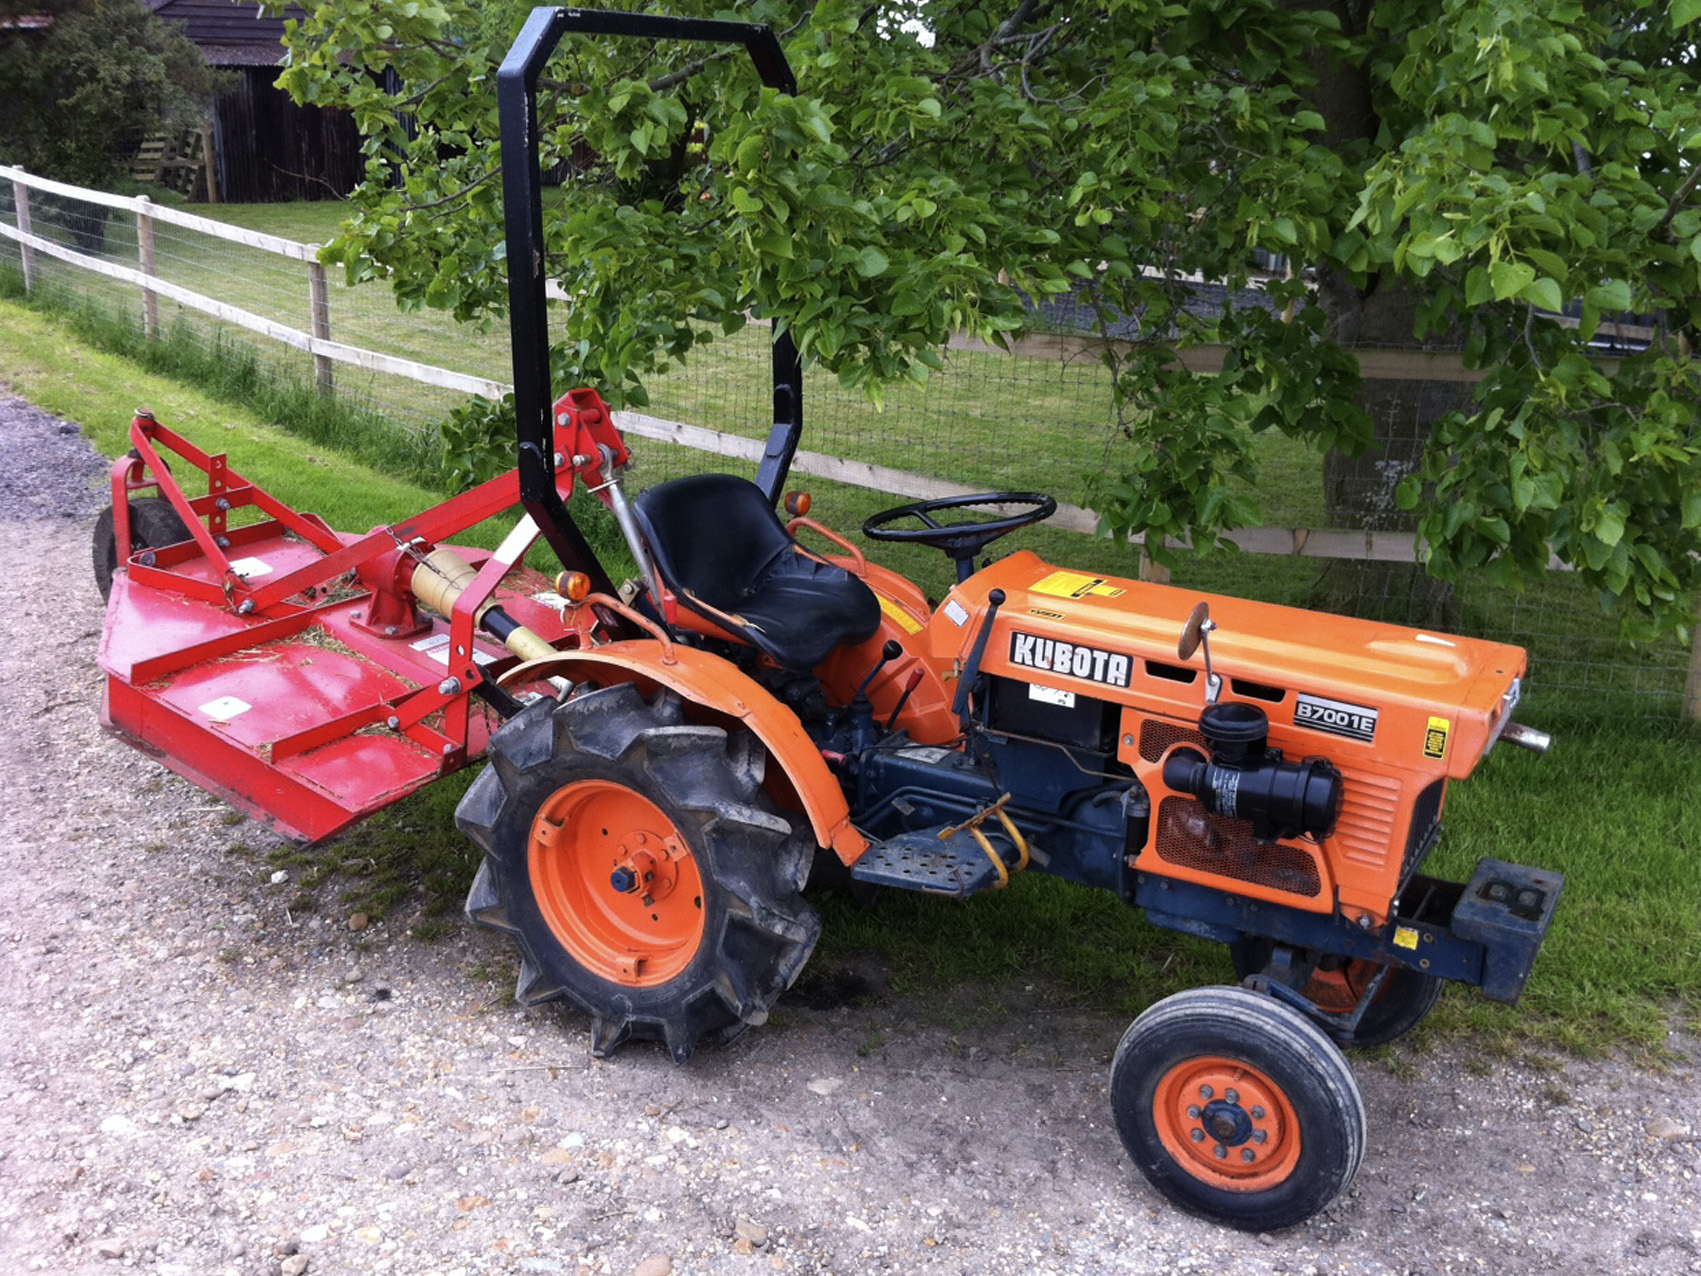 Kubota compact tractor